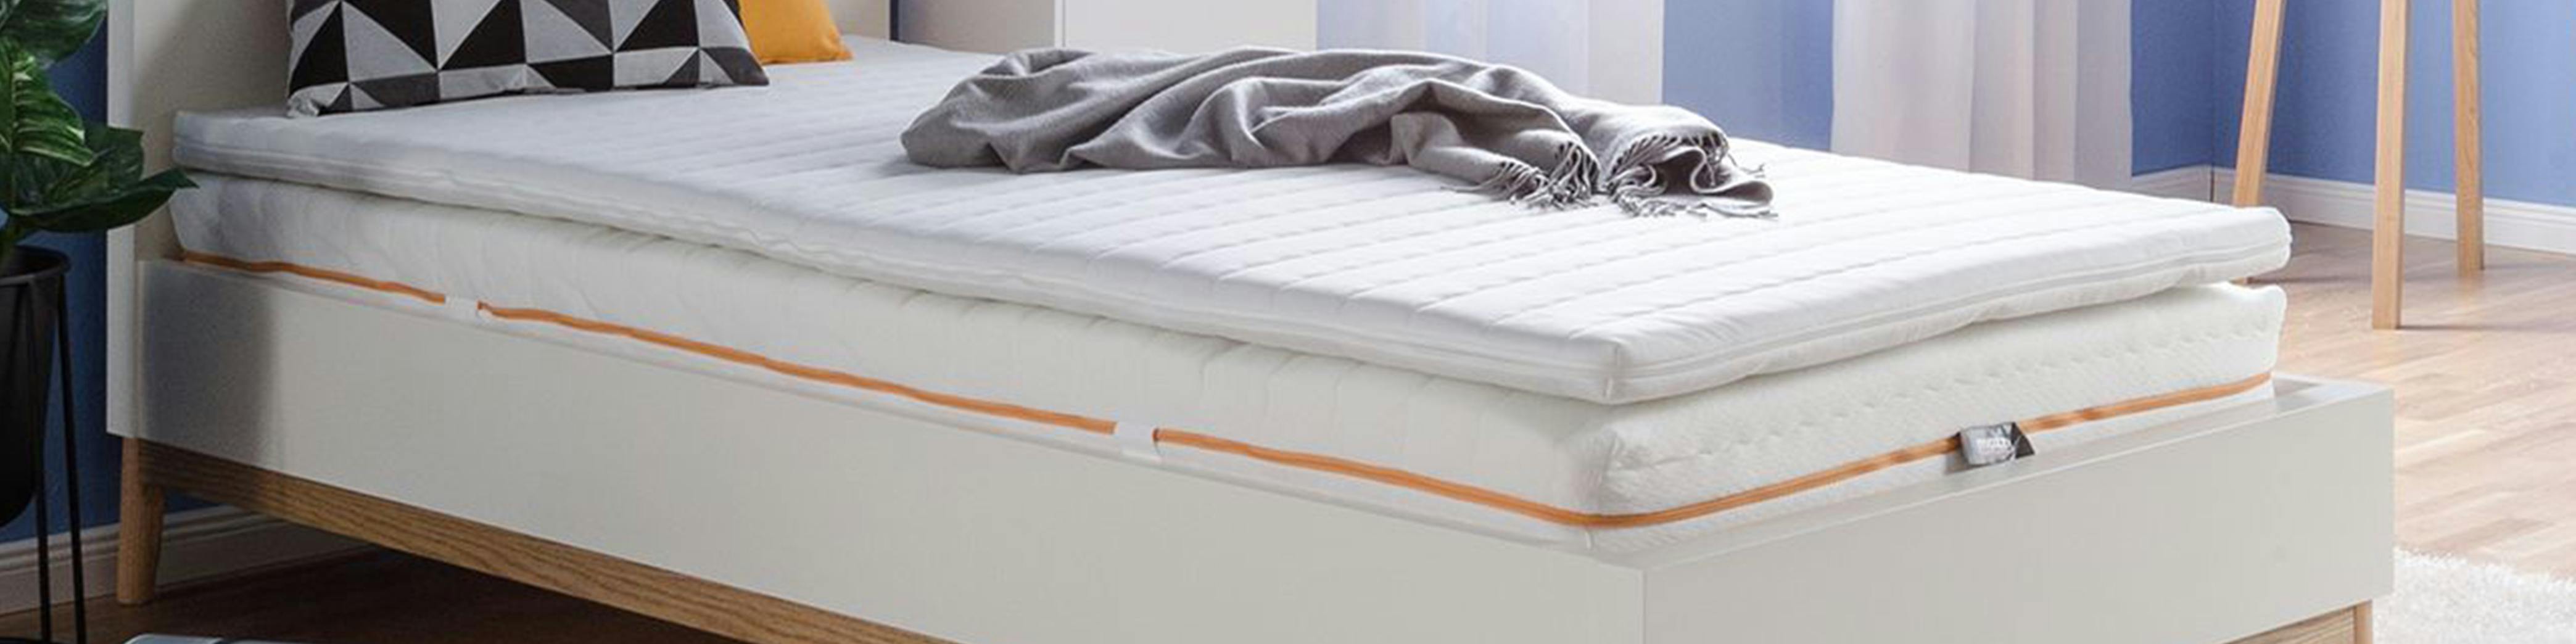 Bett mit Matratze und Matratzentopper